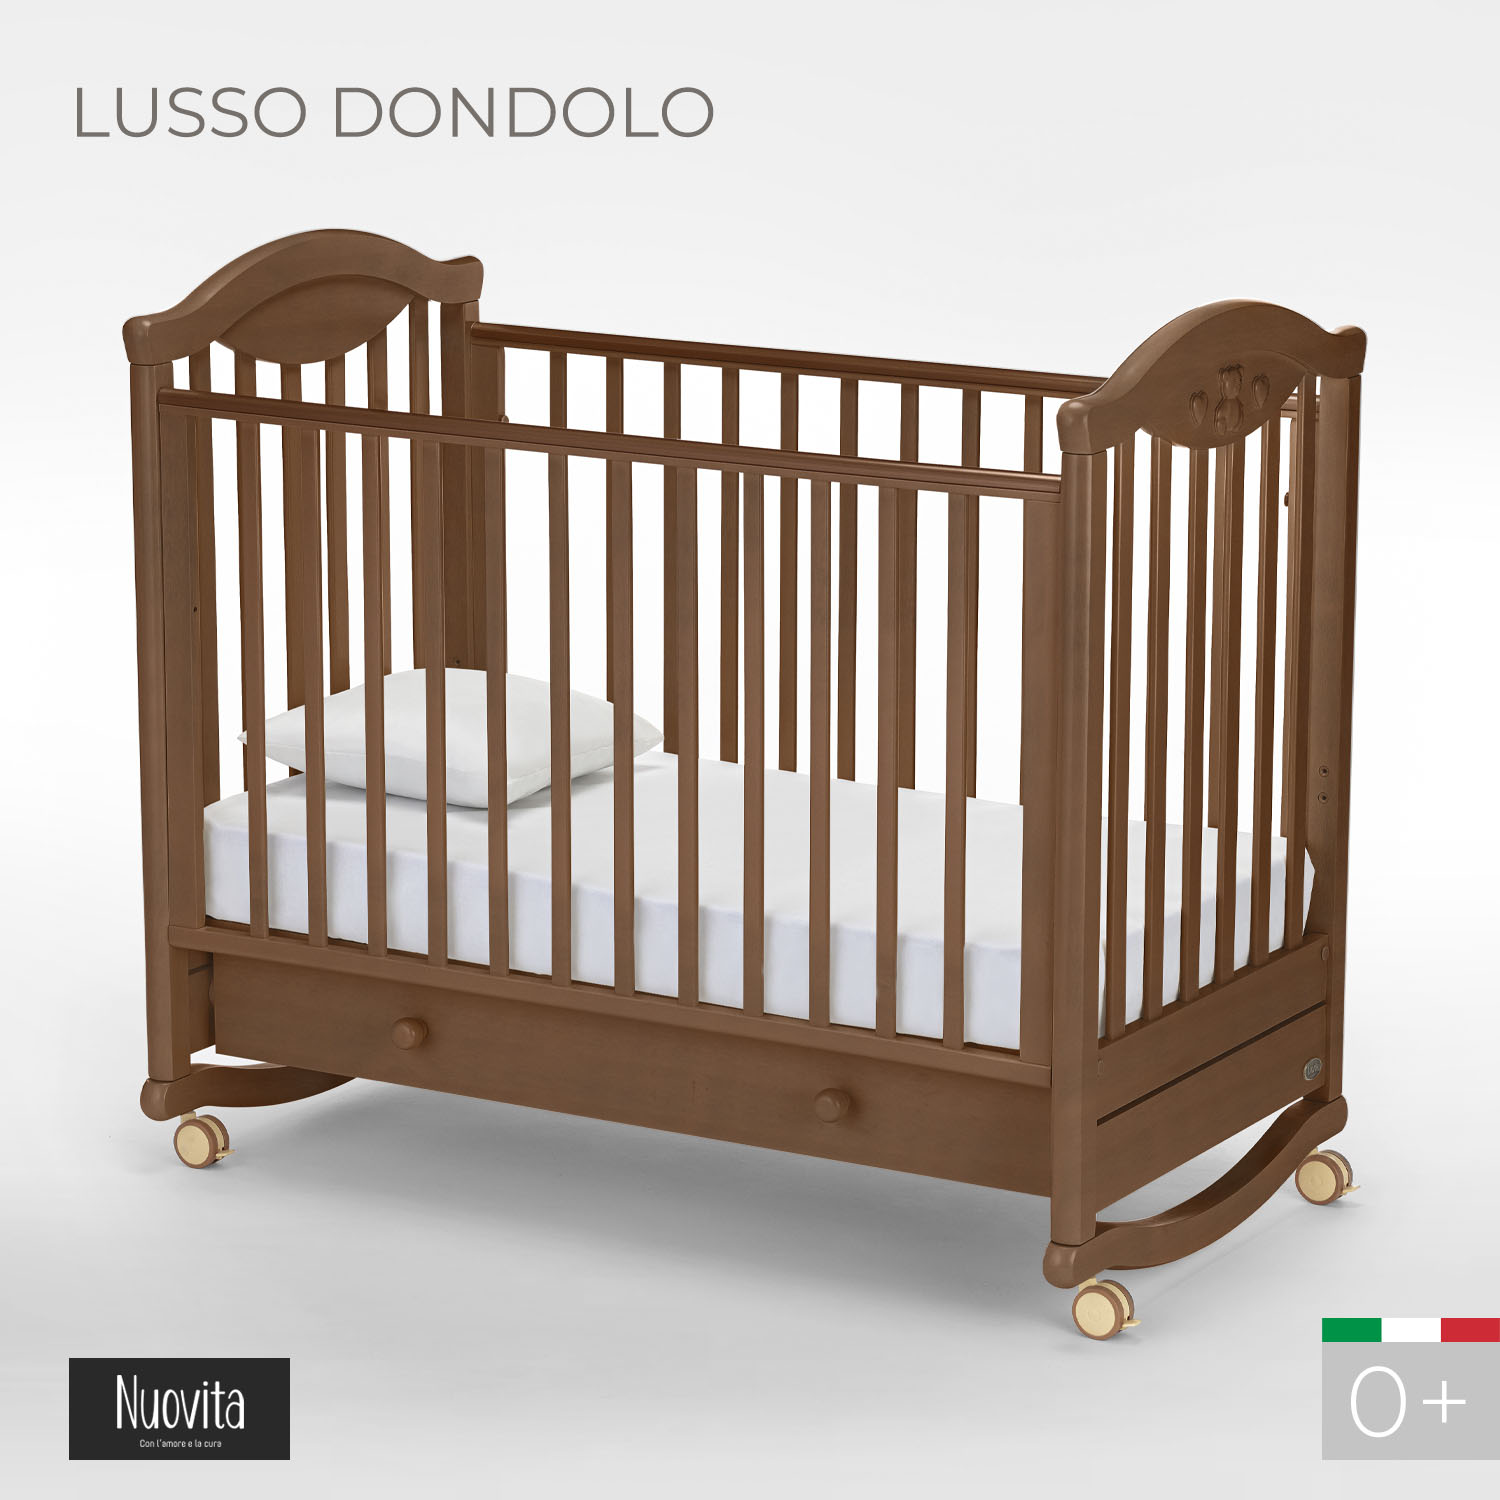 Детская кроватка Nuovita Lusso Dondolo прямоугольная, без маятника (темный орех) - фото 2